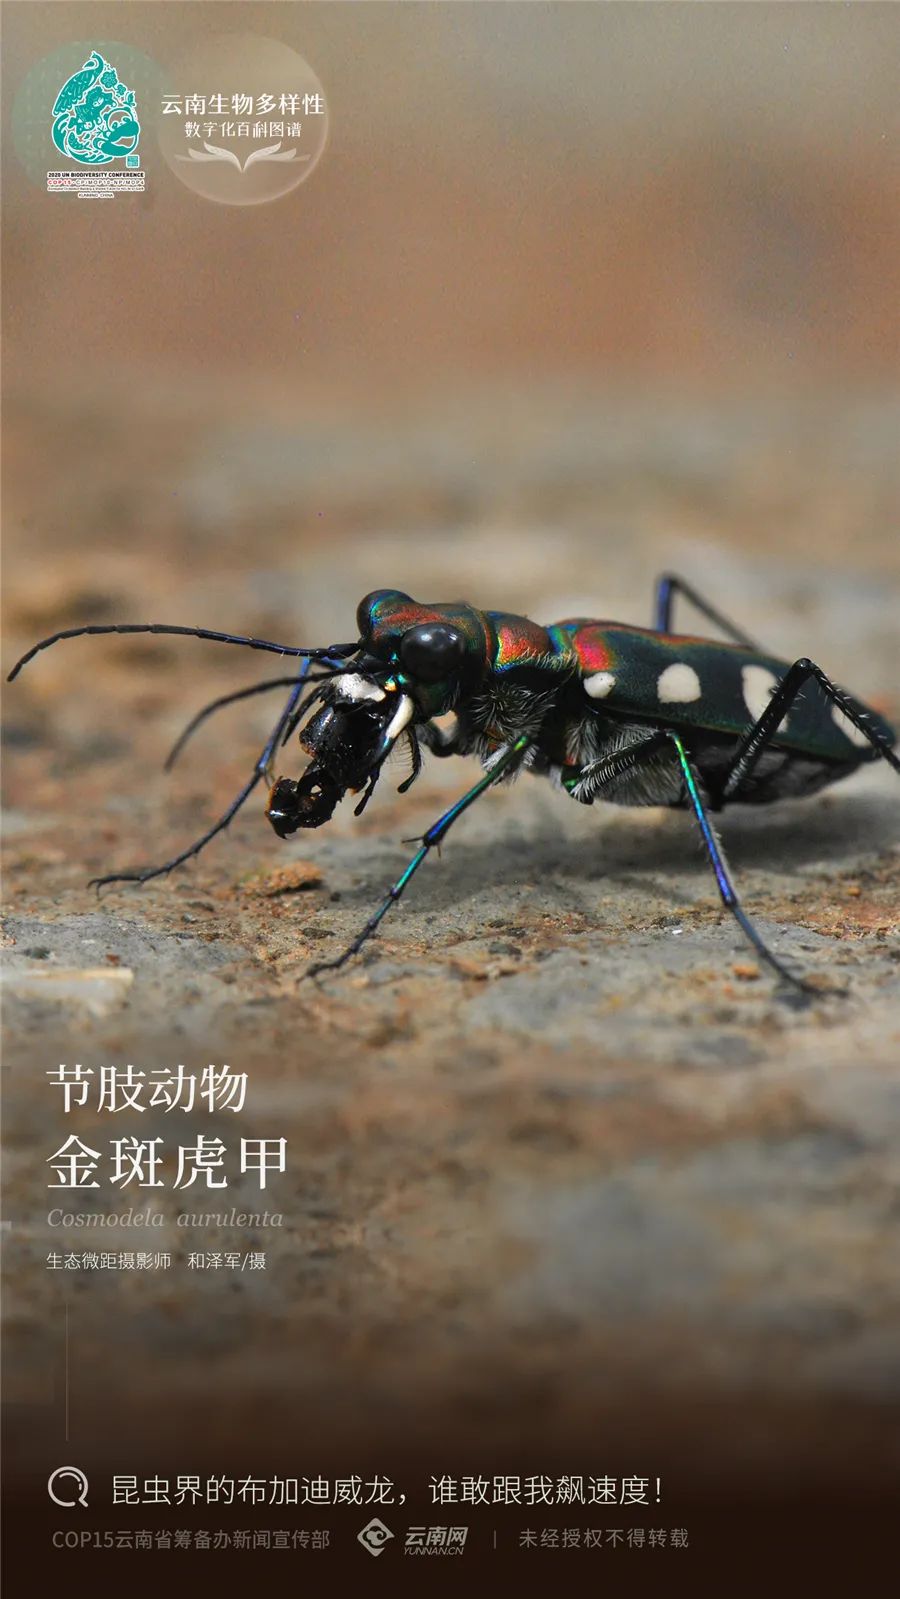 云南生物多样性数字化百科图谱金斑虎甲昆虫界的布加迪威龙谁敢跟我飙